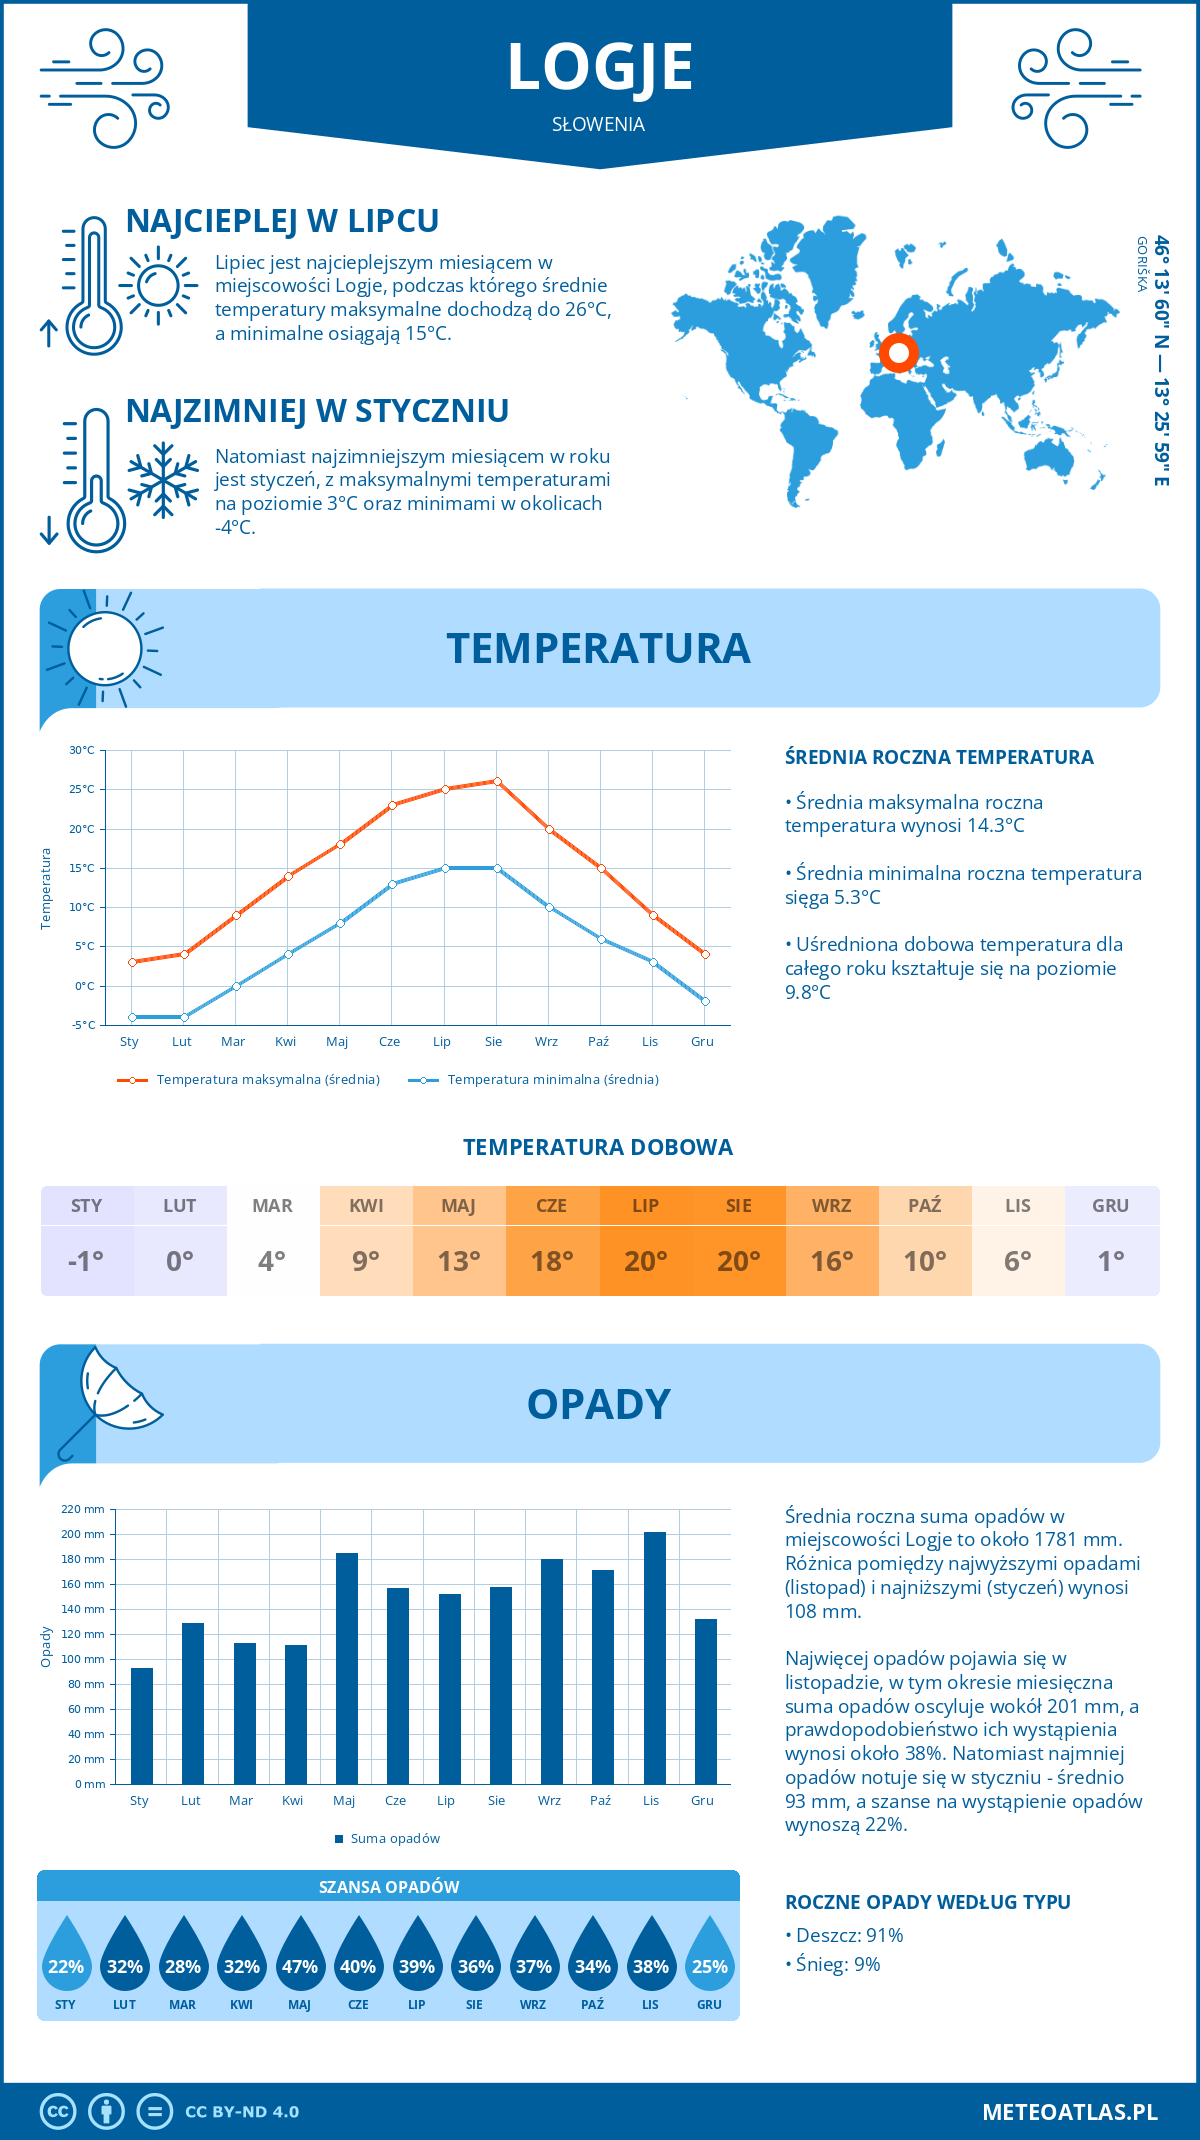 Pogoda Logje (Słowenia). Temperatura oraz opady.